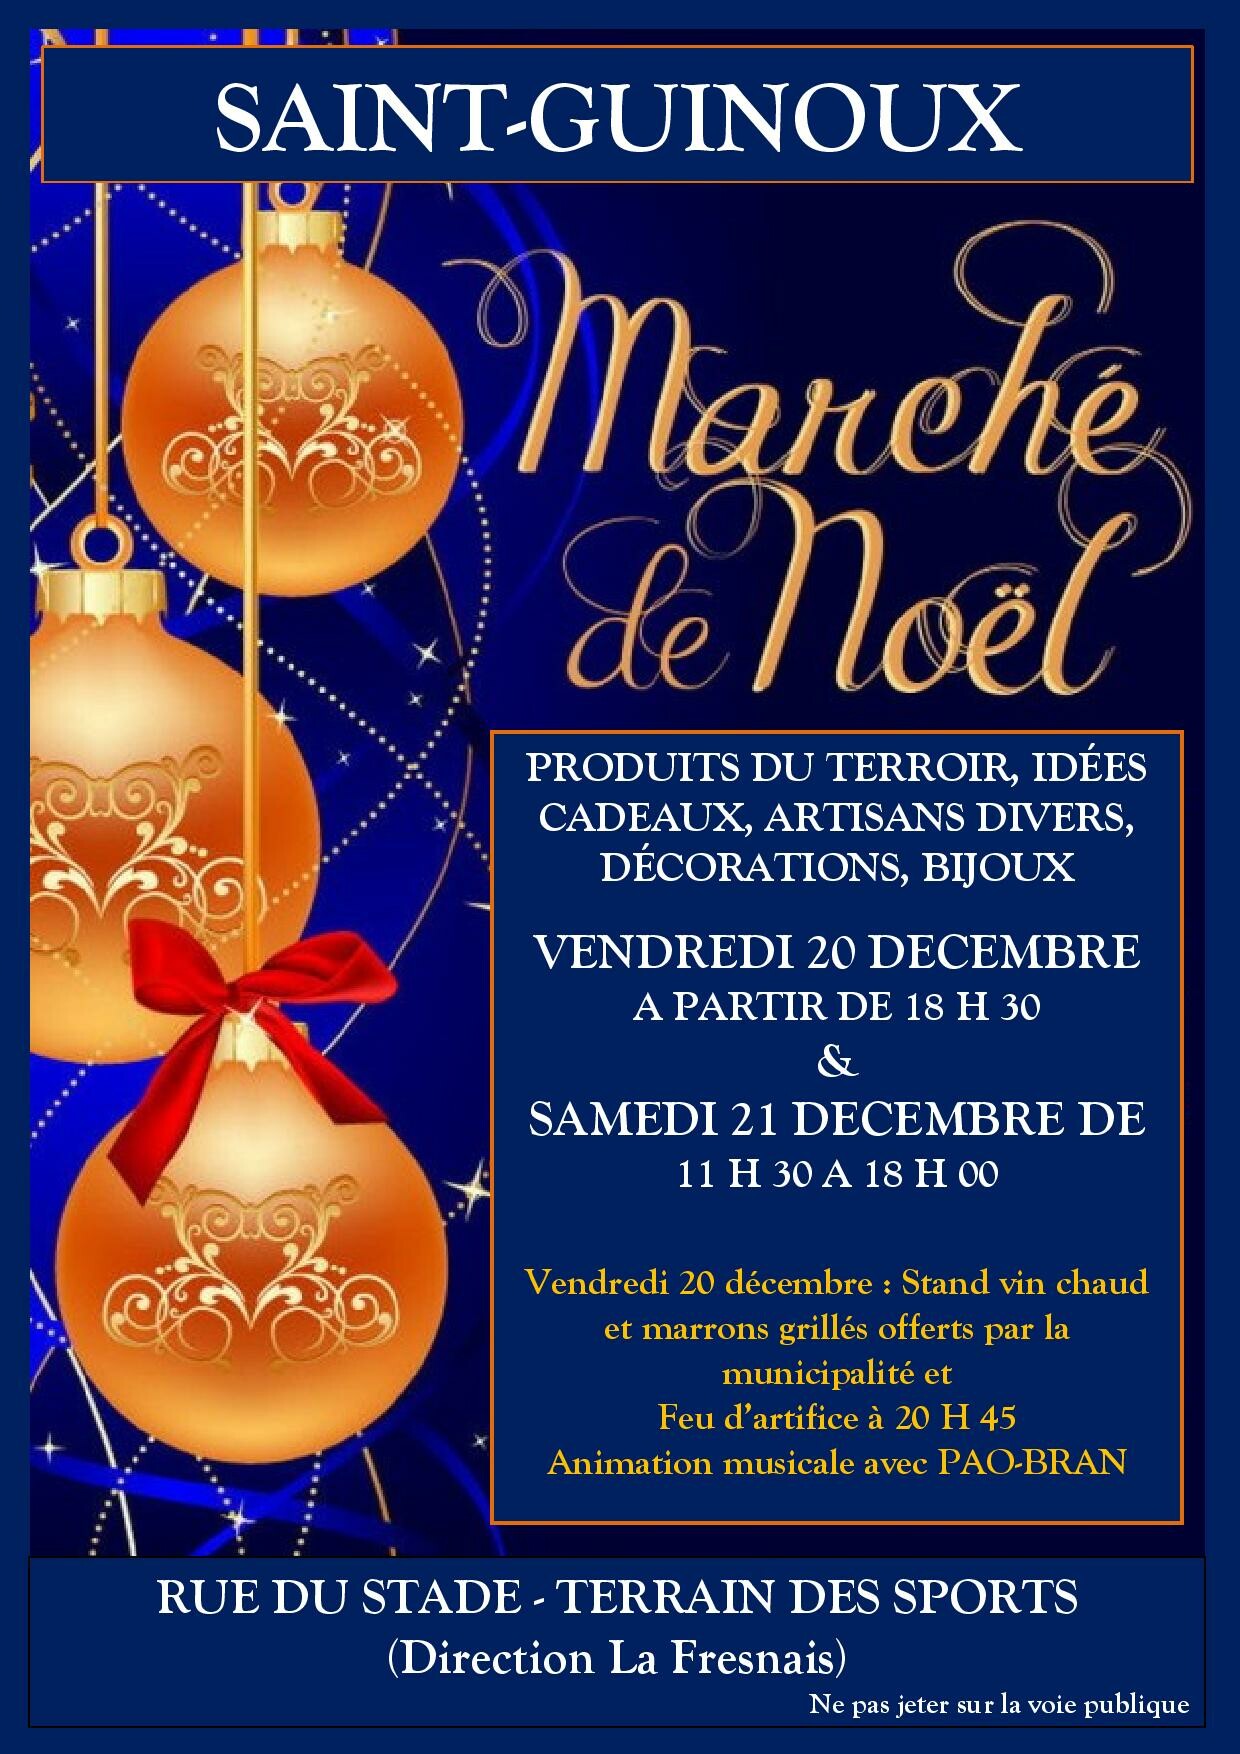 Marché de Noël de Saint-Guinoux